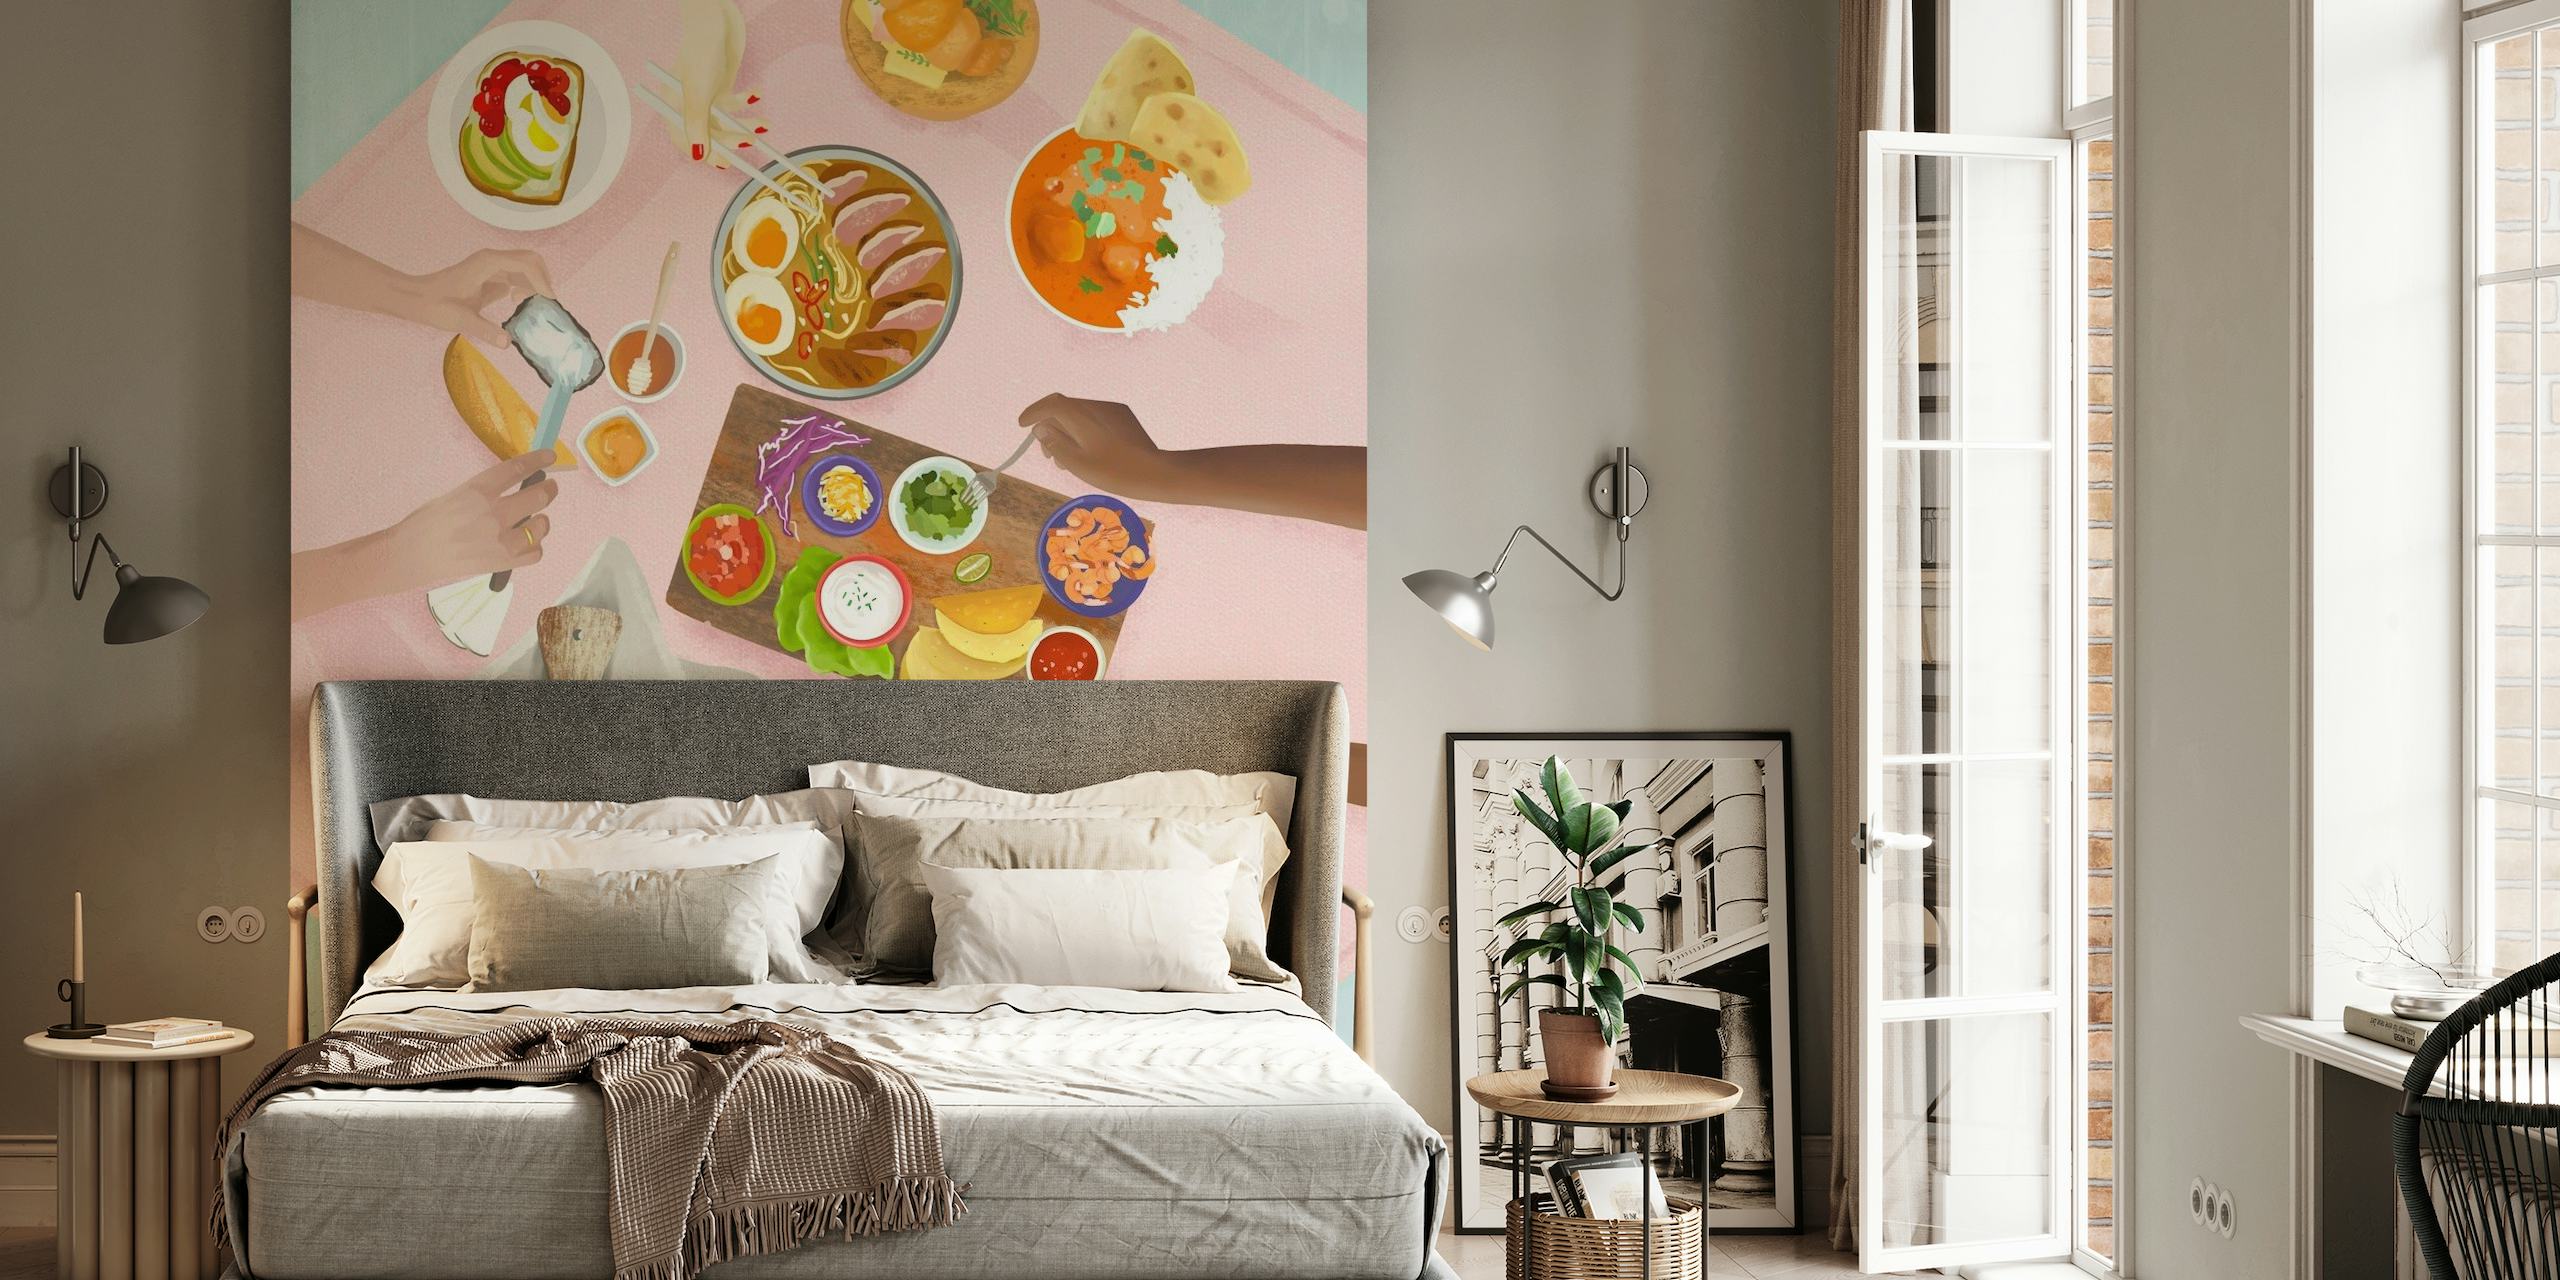 Ilustrirana zidna slika na temu doručka s pogledom odozgo na blagovaonski stol postavljen raznim jelima i cvijećem